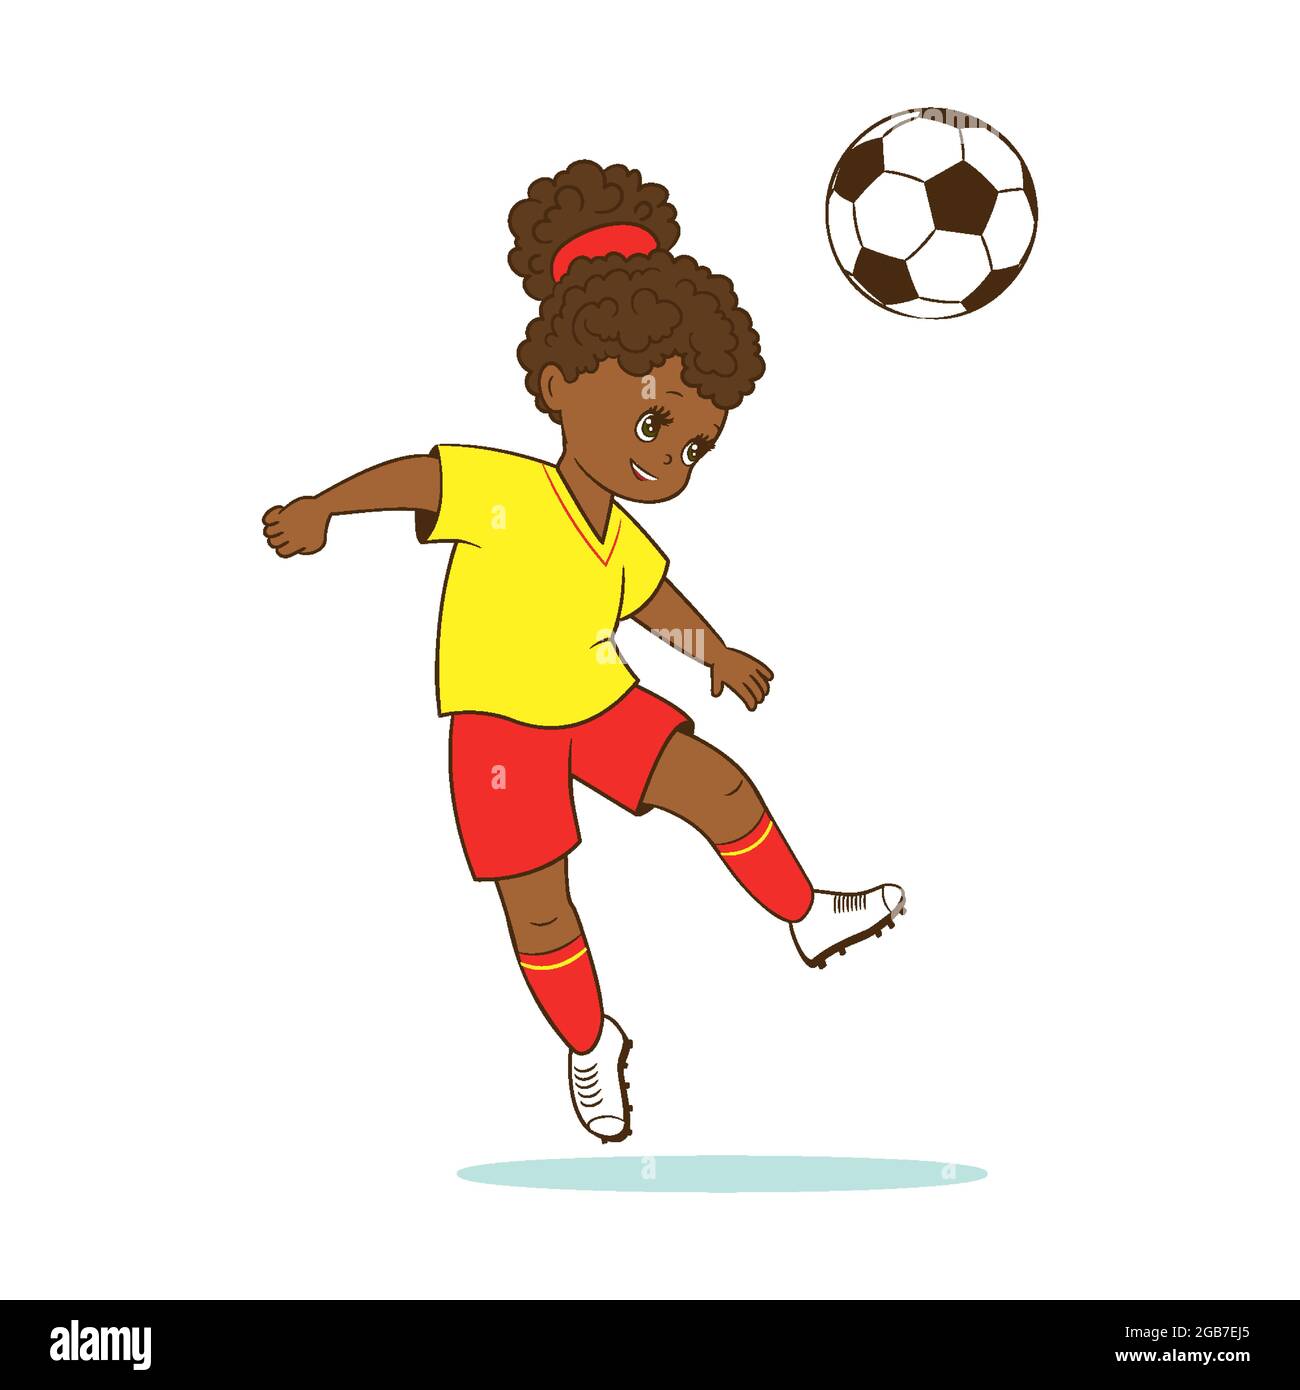 La joueuse de football de fille bat le ballon de football avec sa tête. Illustration vectorielle de style dessin animé, à plat Illustration de Vecteur